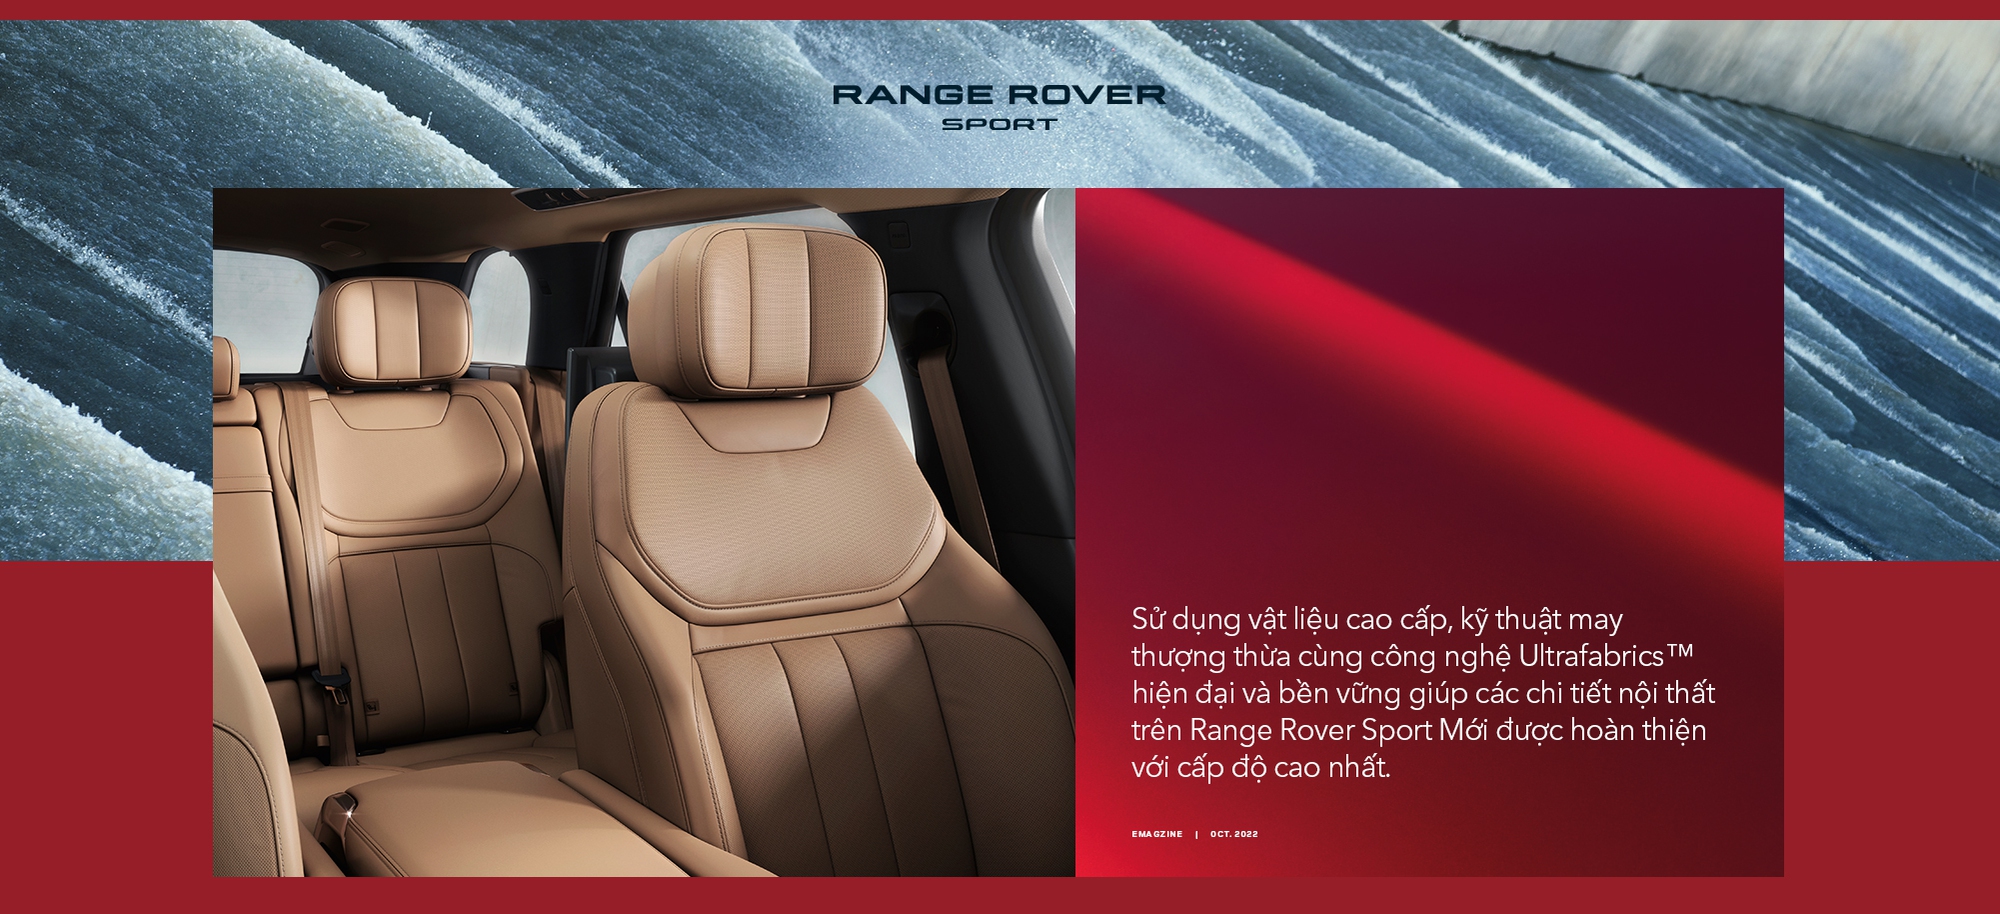 Range Rover Sport Mới - Tái định nghĩa SUV thể thao hạng sang - Ảnh 6.